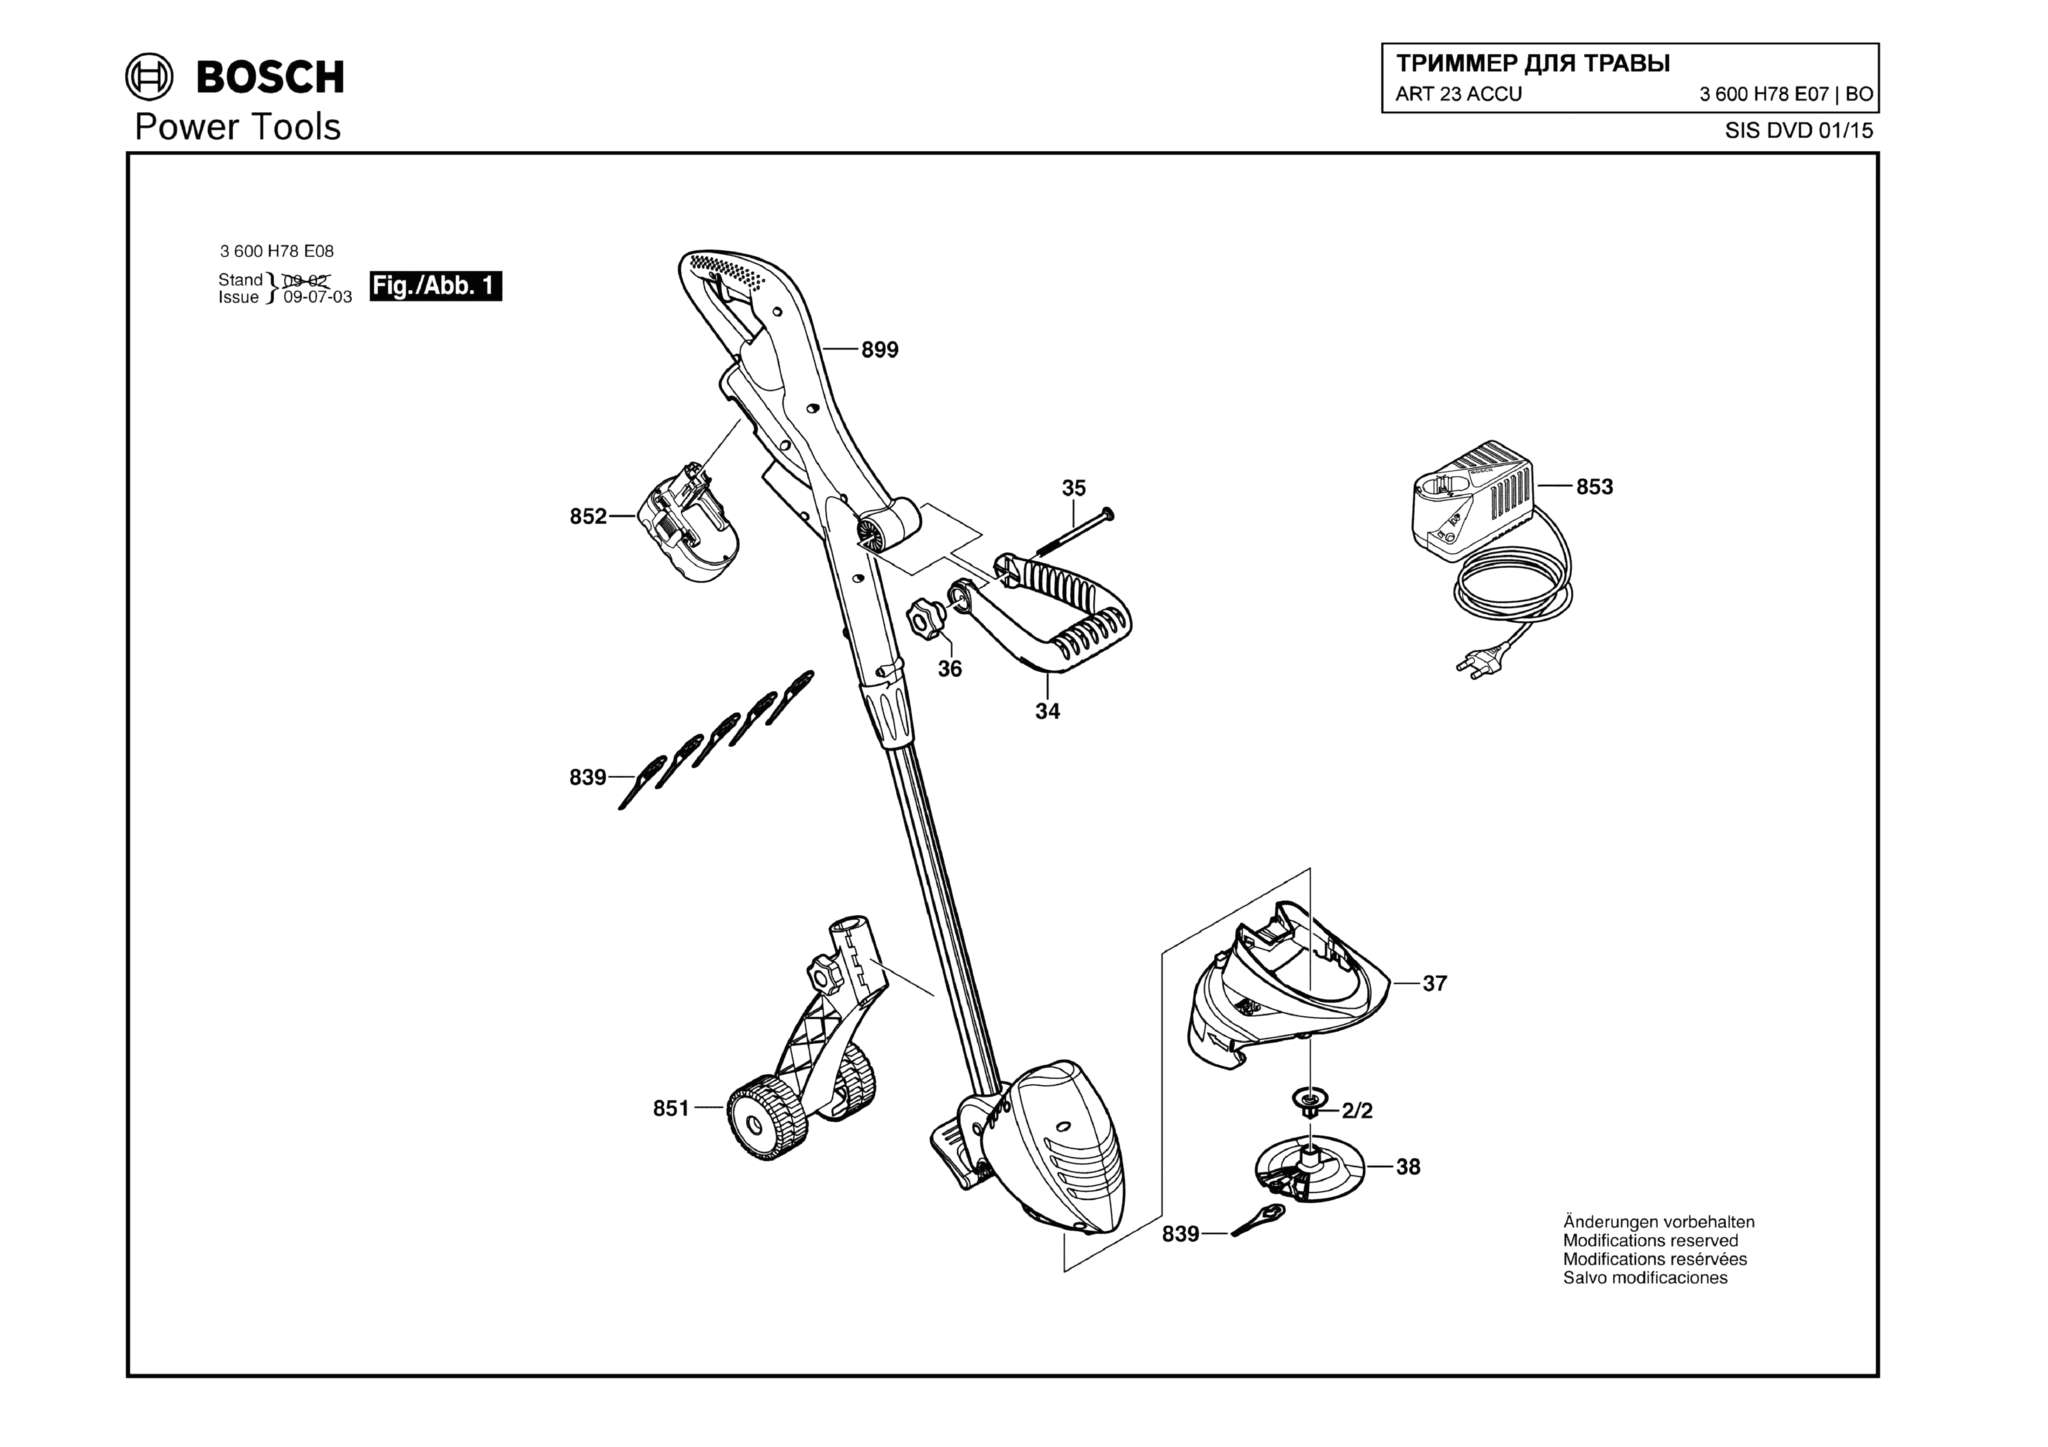 Запчасти, схема и деталировка Bosch ART 23 ACCU (ТИП 3600H78E07)